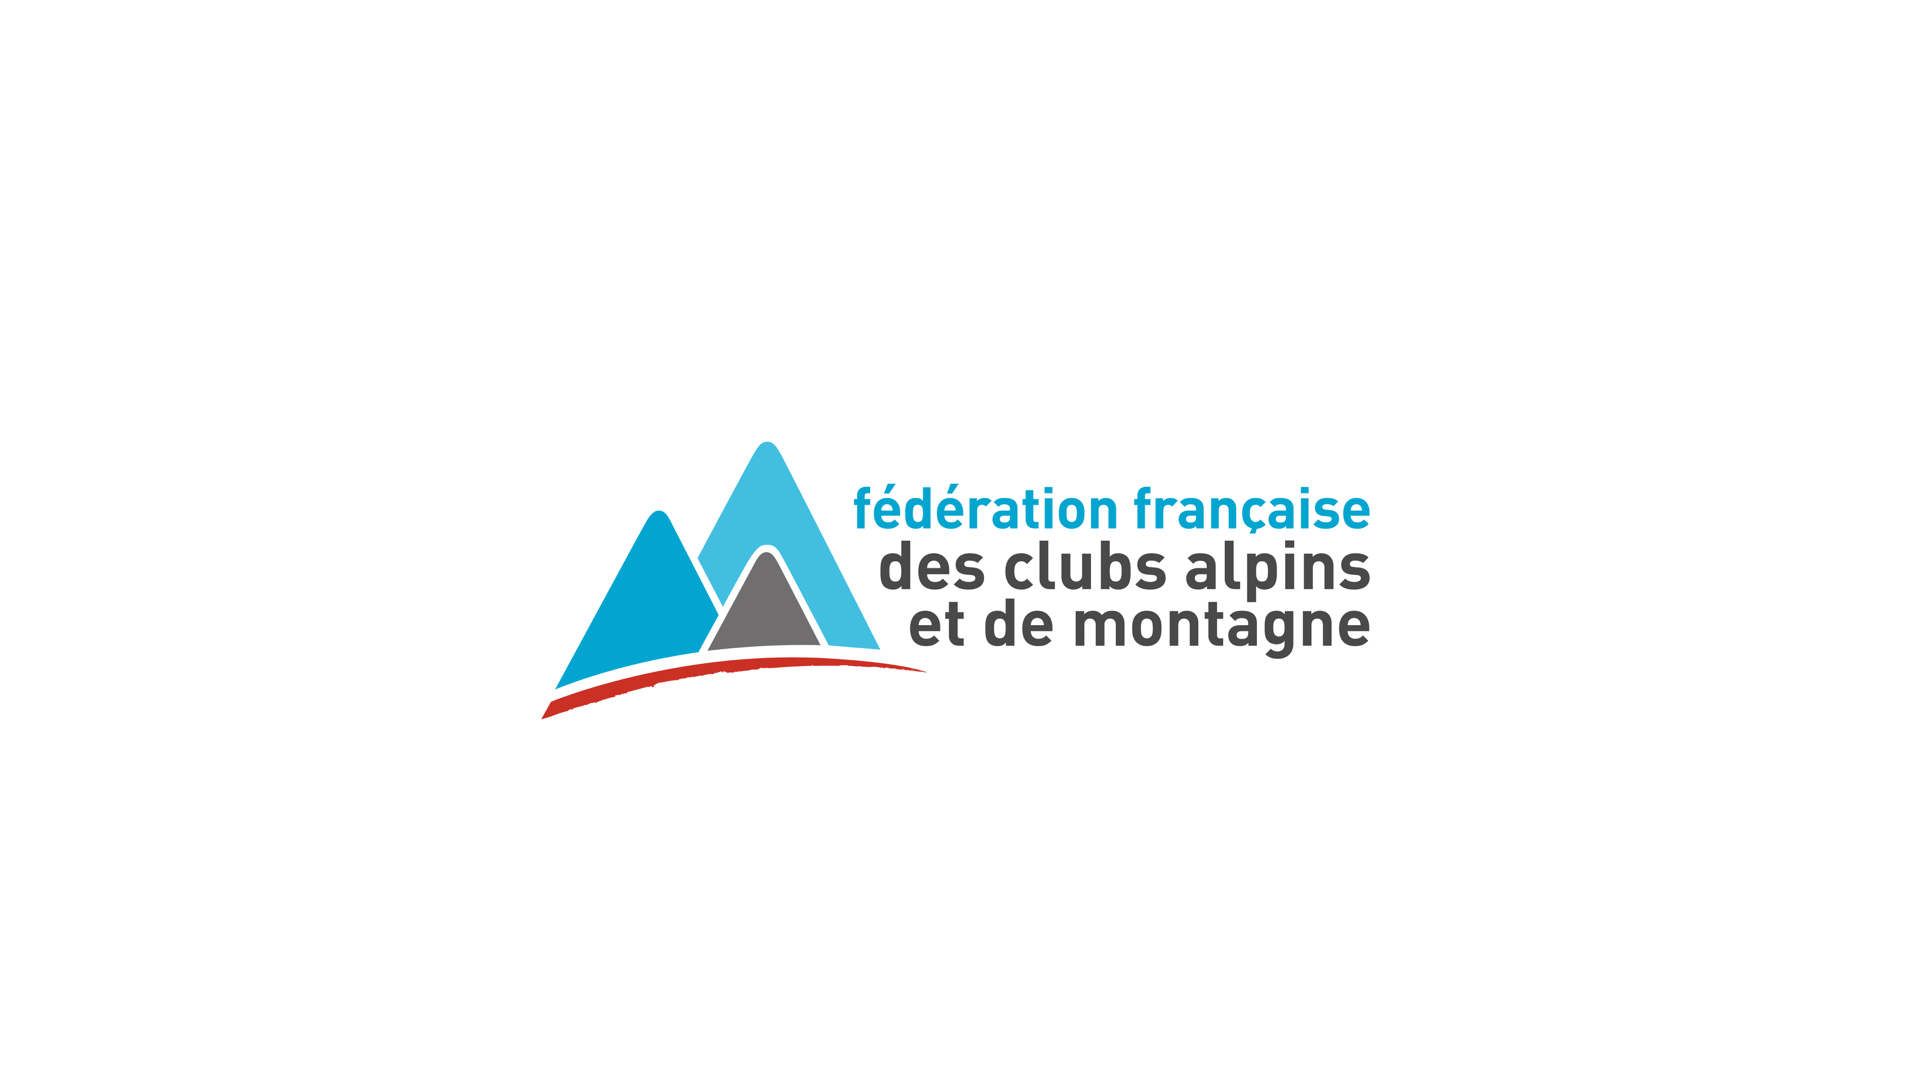 Fédération Française des Clubs alpins et de montagne